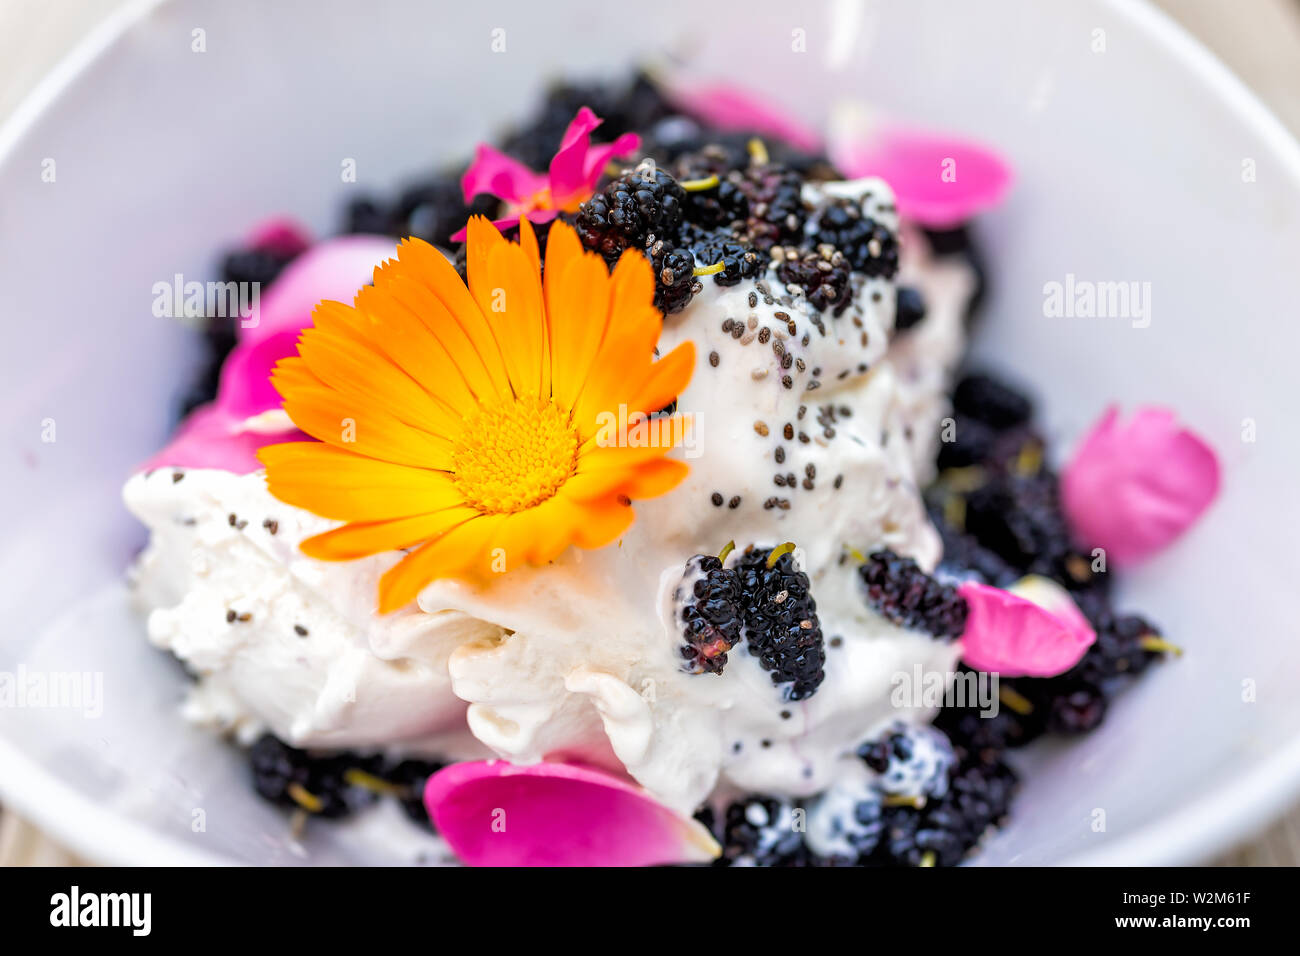 Makro Nahaufnahme des gelben Calendula flower Eis garniert mit frischen schwarzen Maulbeeren Beeren und Chia Samen mit rosa Rosenblättern Stockfoto